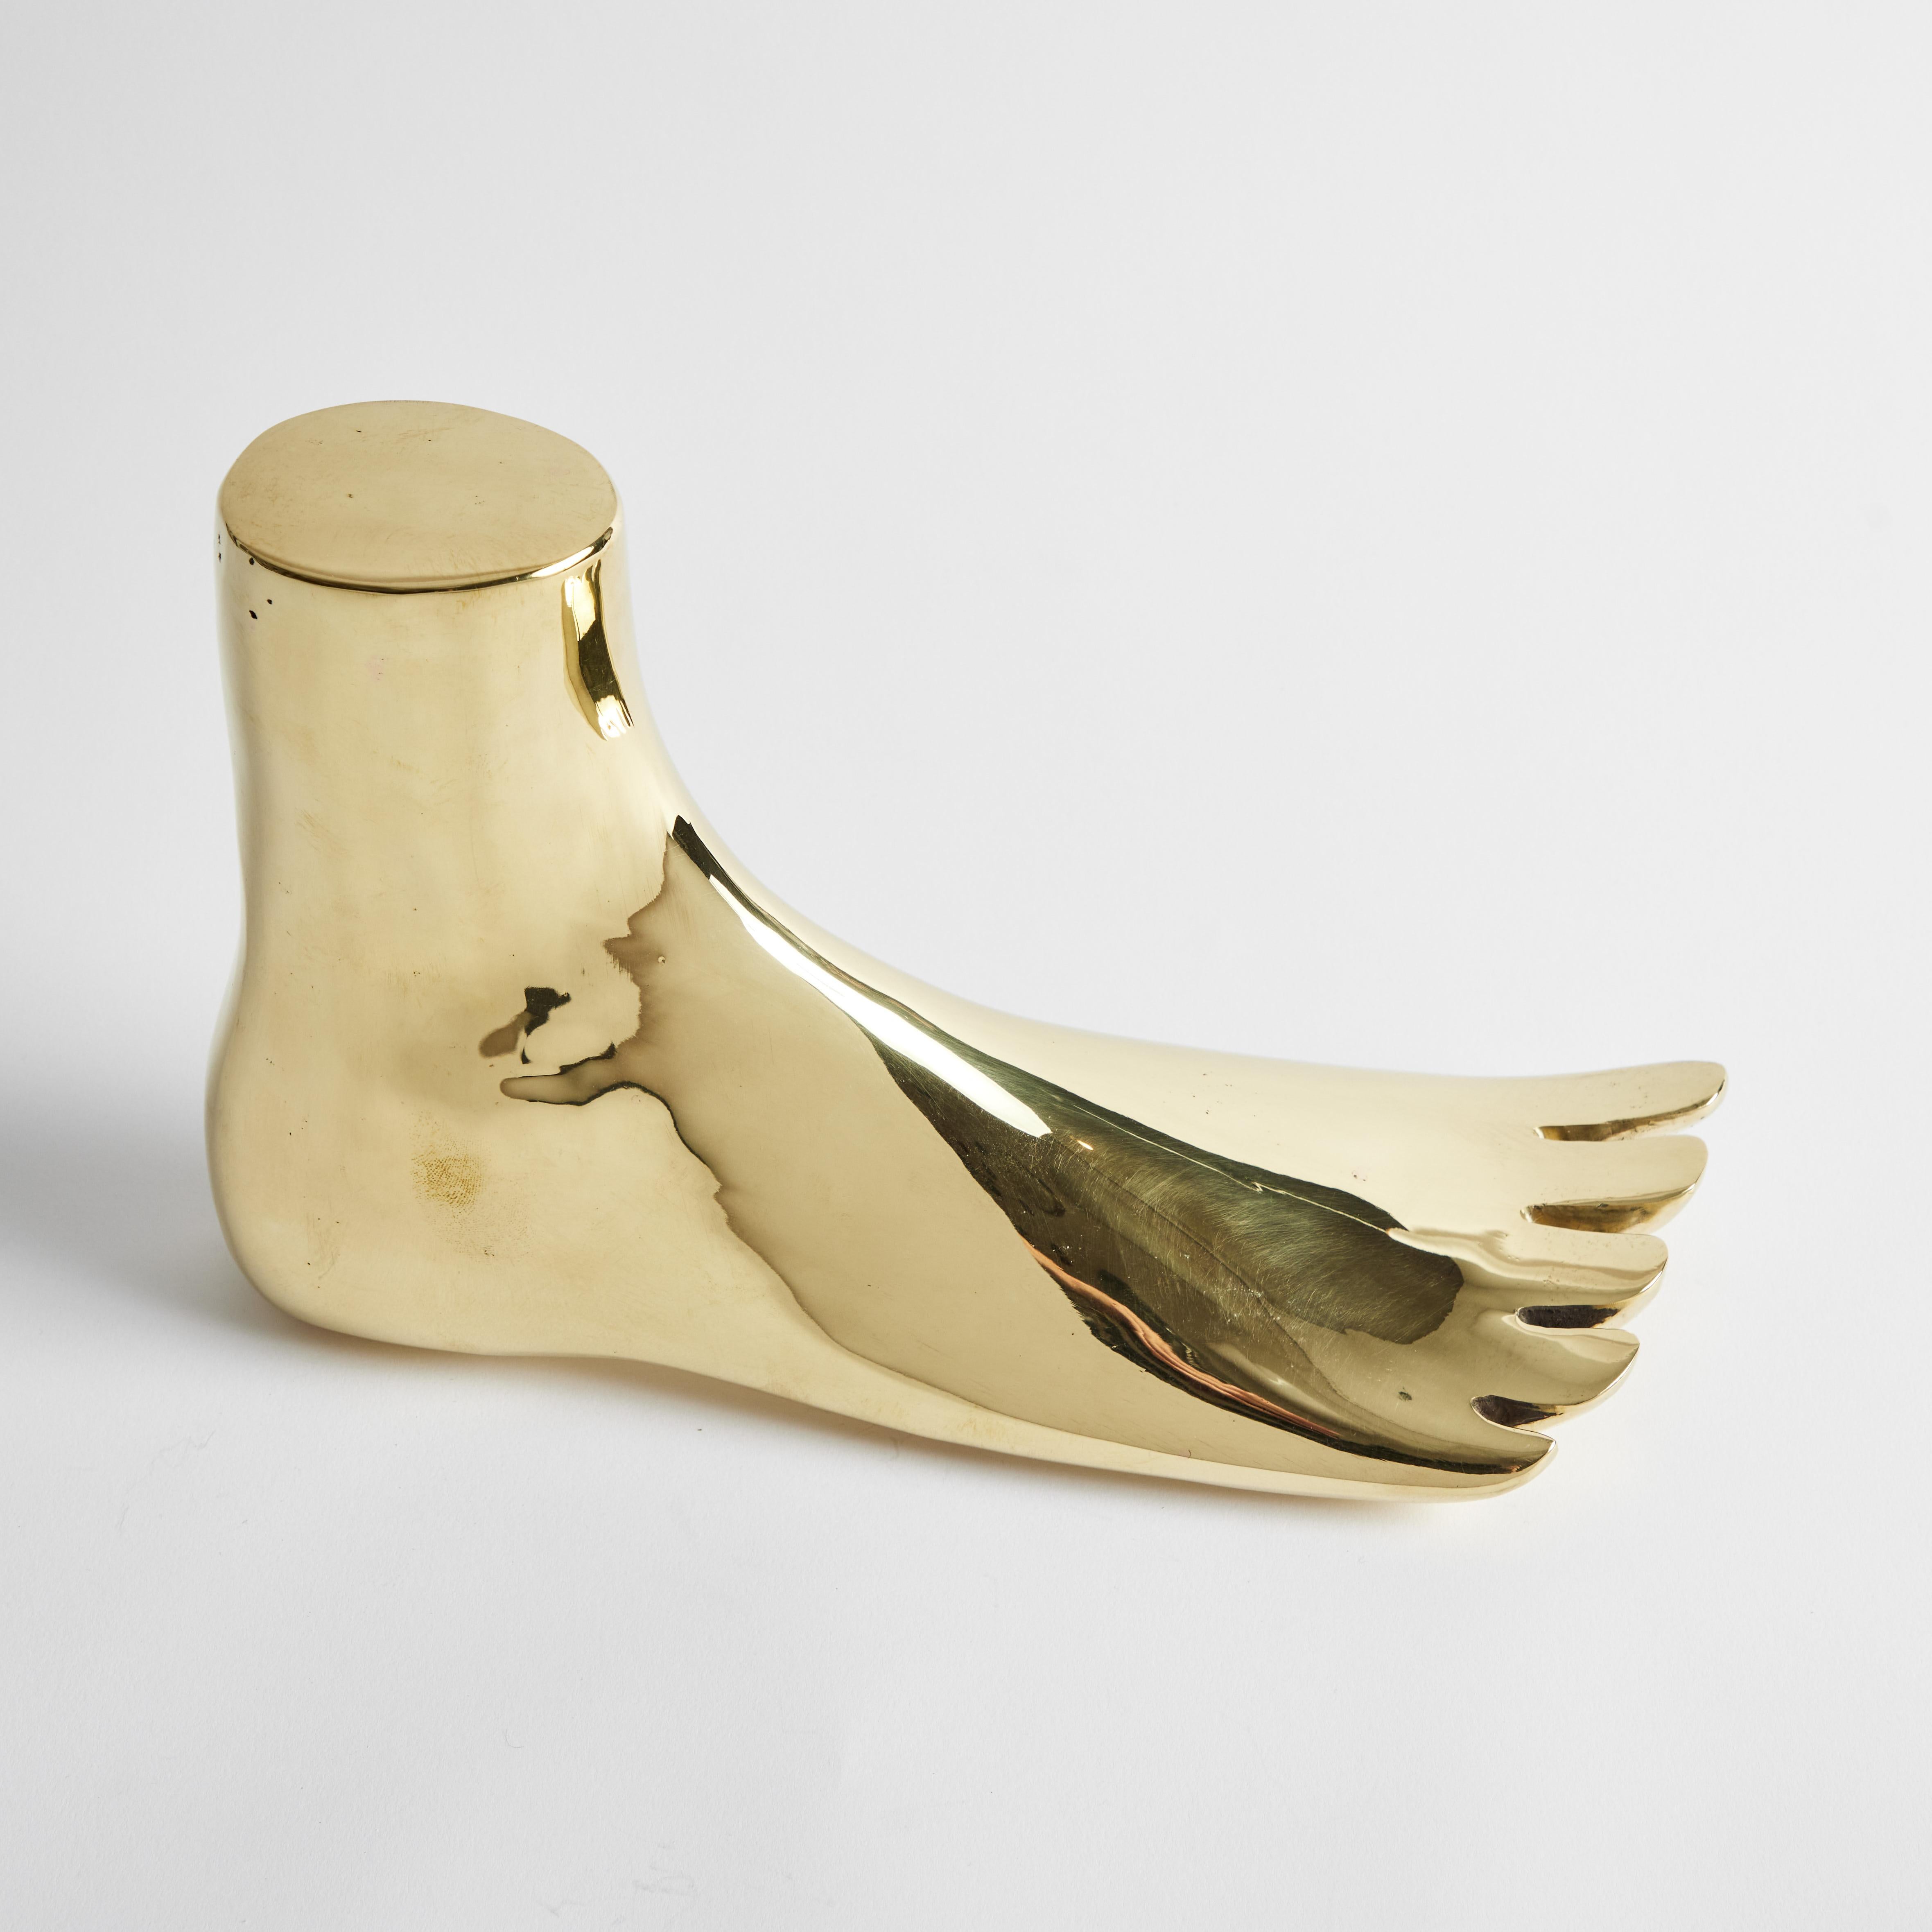 Lebensgroße Carl Auböck Modell #4273-3 'XL Foot' Skulptur aus poliertem Messing. Diese in den 1950er Jahren entworfene, eindrucksvoll skalierte Variante wird von der Werkstätte Carl Auböck, Österreich, aus poliertem, unlackiertem Messing